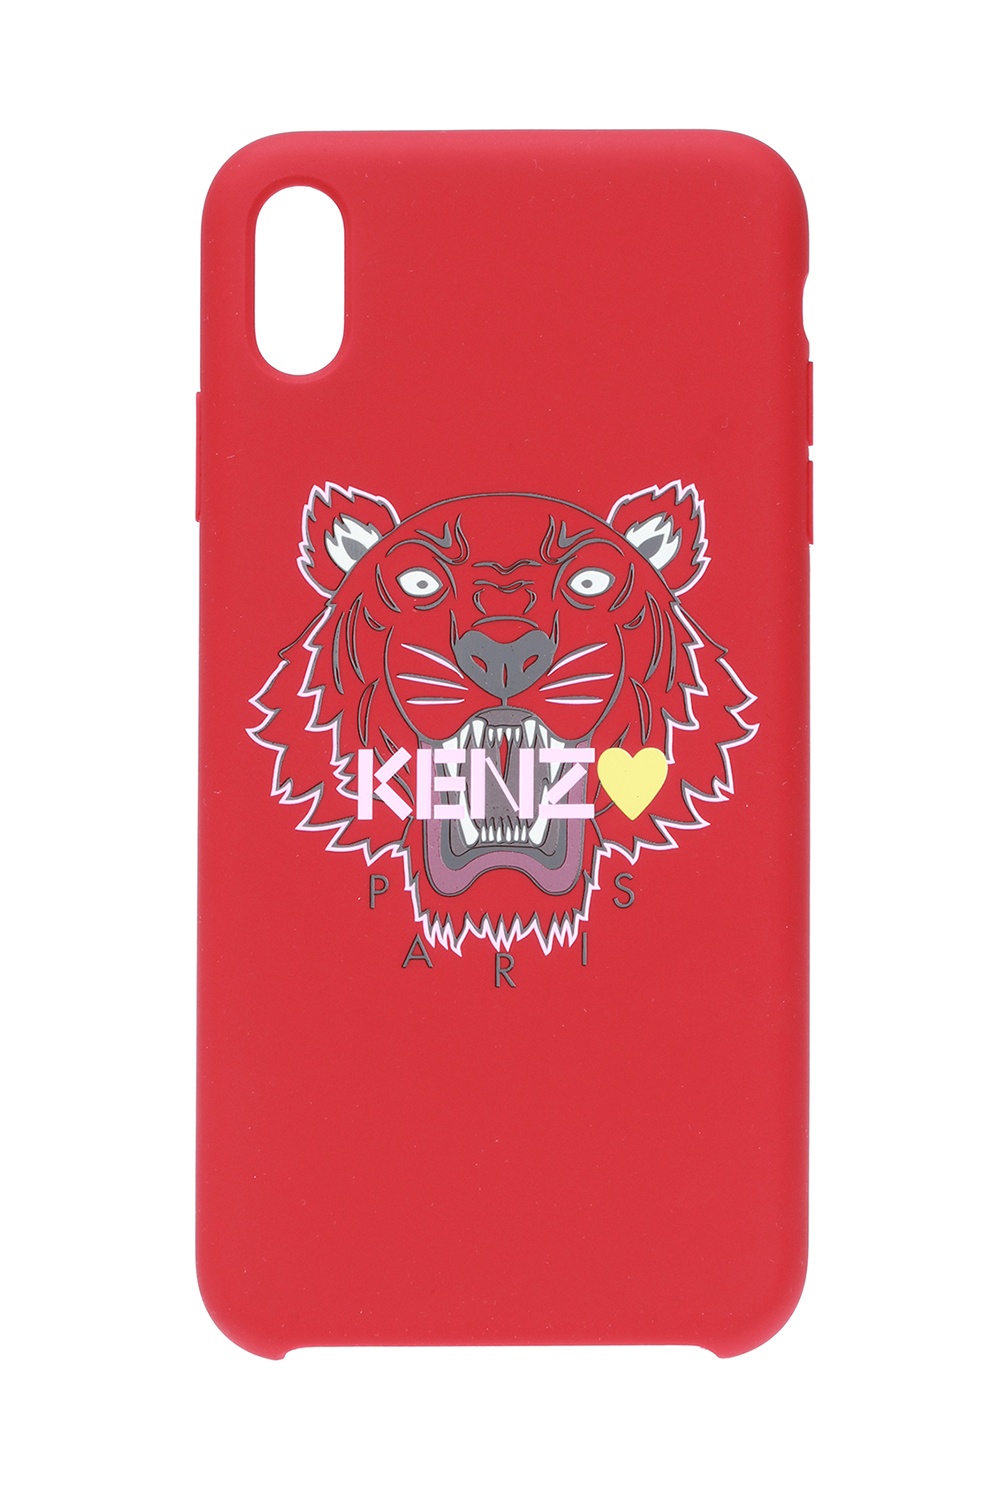 kenzo iphone 10 case